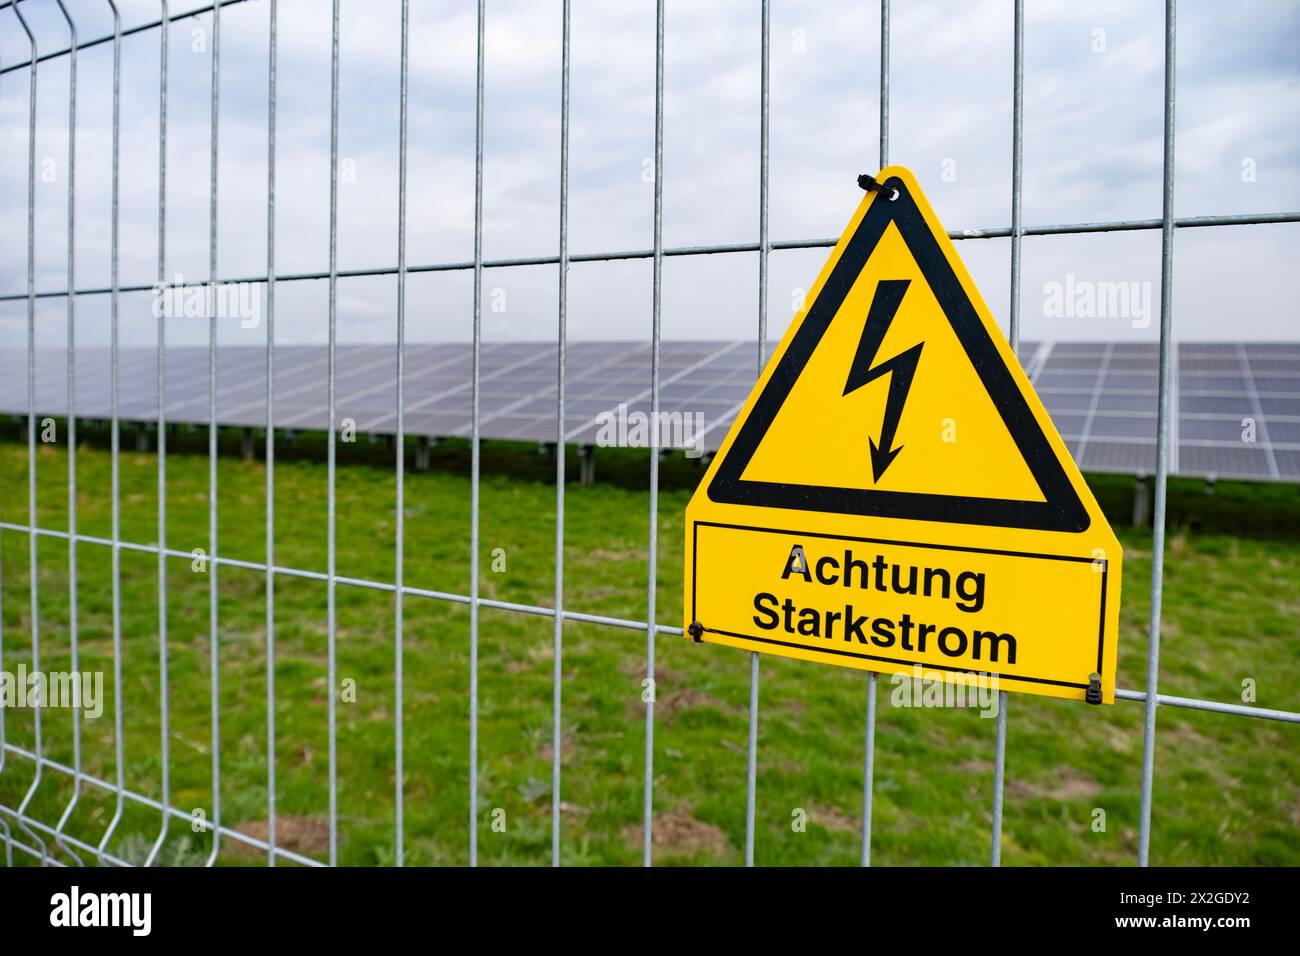 Gelbes Warnschild Solar Farms, die Solarenergie durch Photovoltaik-Panels erfassen, die Solarzellen enthalten, verwandeln Sonnenlicht in Strom, Sust Stockfoto